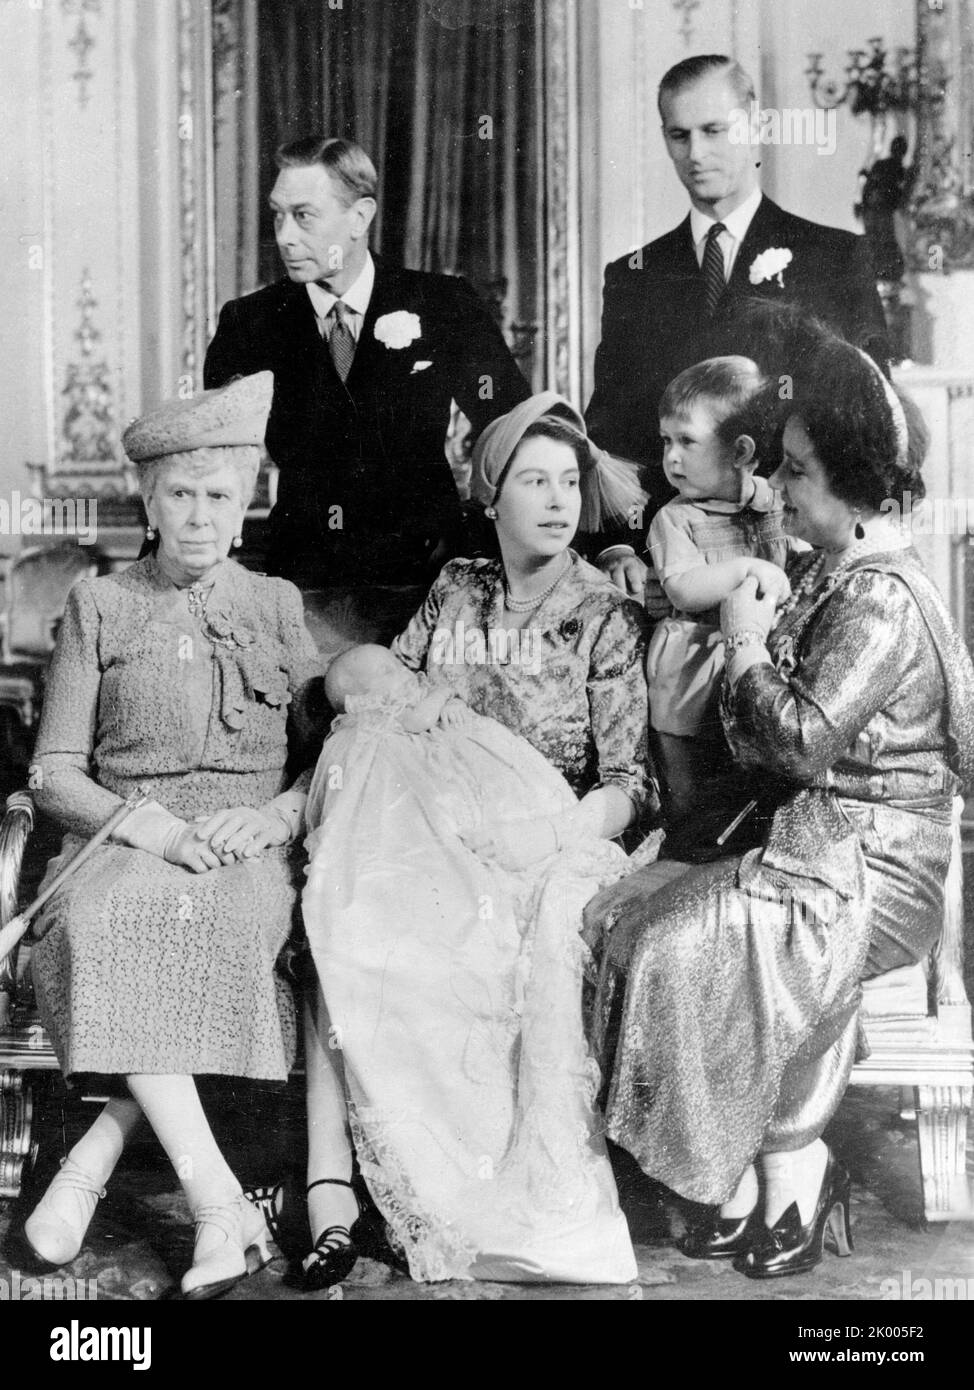 Ottobre 21, 1950 - Londra, Inghilterra, Regno Unito - la famiglia reale posa per una fotografia di famiglia dopo il battesimo della PRINCIPESSA ANNA a Buckingham Palace. Da sinistra, la bisnonna DEL bambino REGINA MARIA, nonno RE GIORGIO VI, madre PRINCIPESSA ELISABETTA II che tiene Anna, suo padre PRINCIPE FILIPPO, suo fratello PRINCIPE CARLO e nonna PRINCIPESSA ELISABETTA. (Credit Image: © Keystone Press Agency/ZUMA Press Wire) Foto Stock